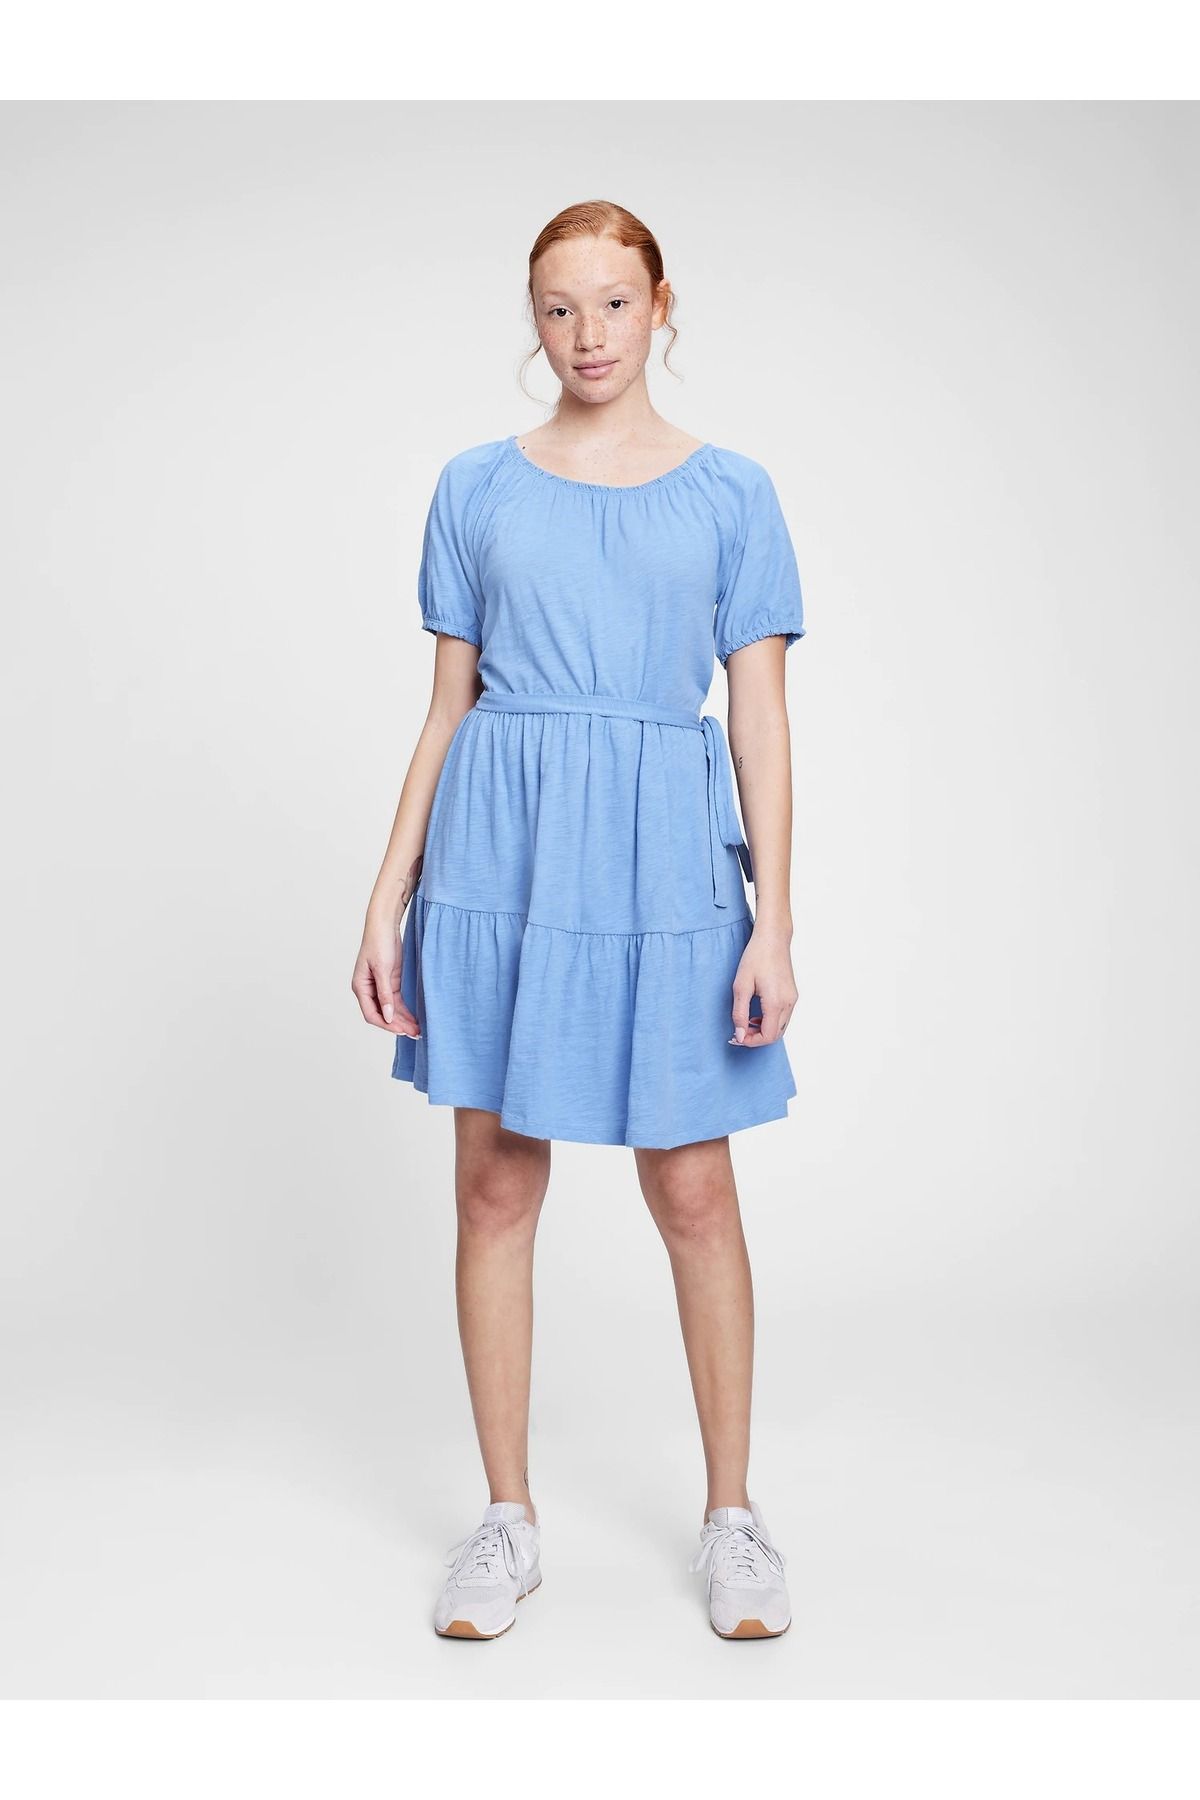 GAP Kadın Mavi Foreversoft Mini Elbise